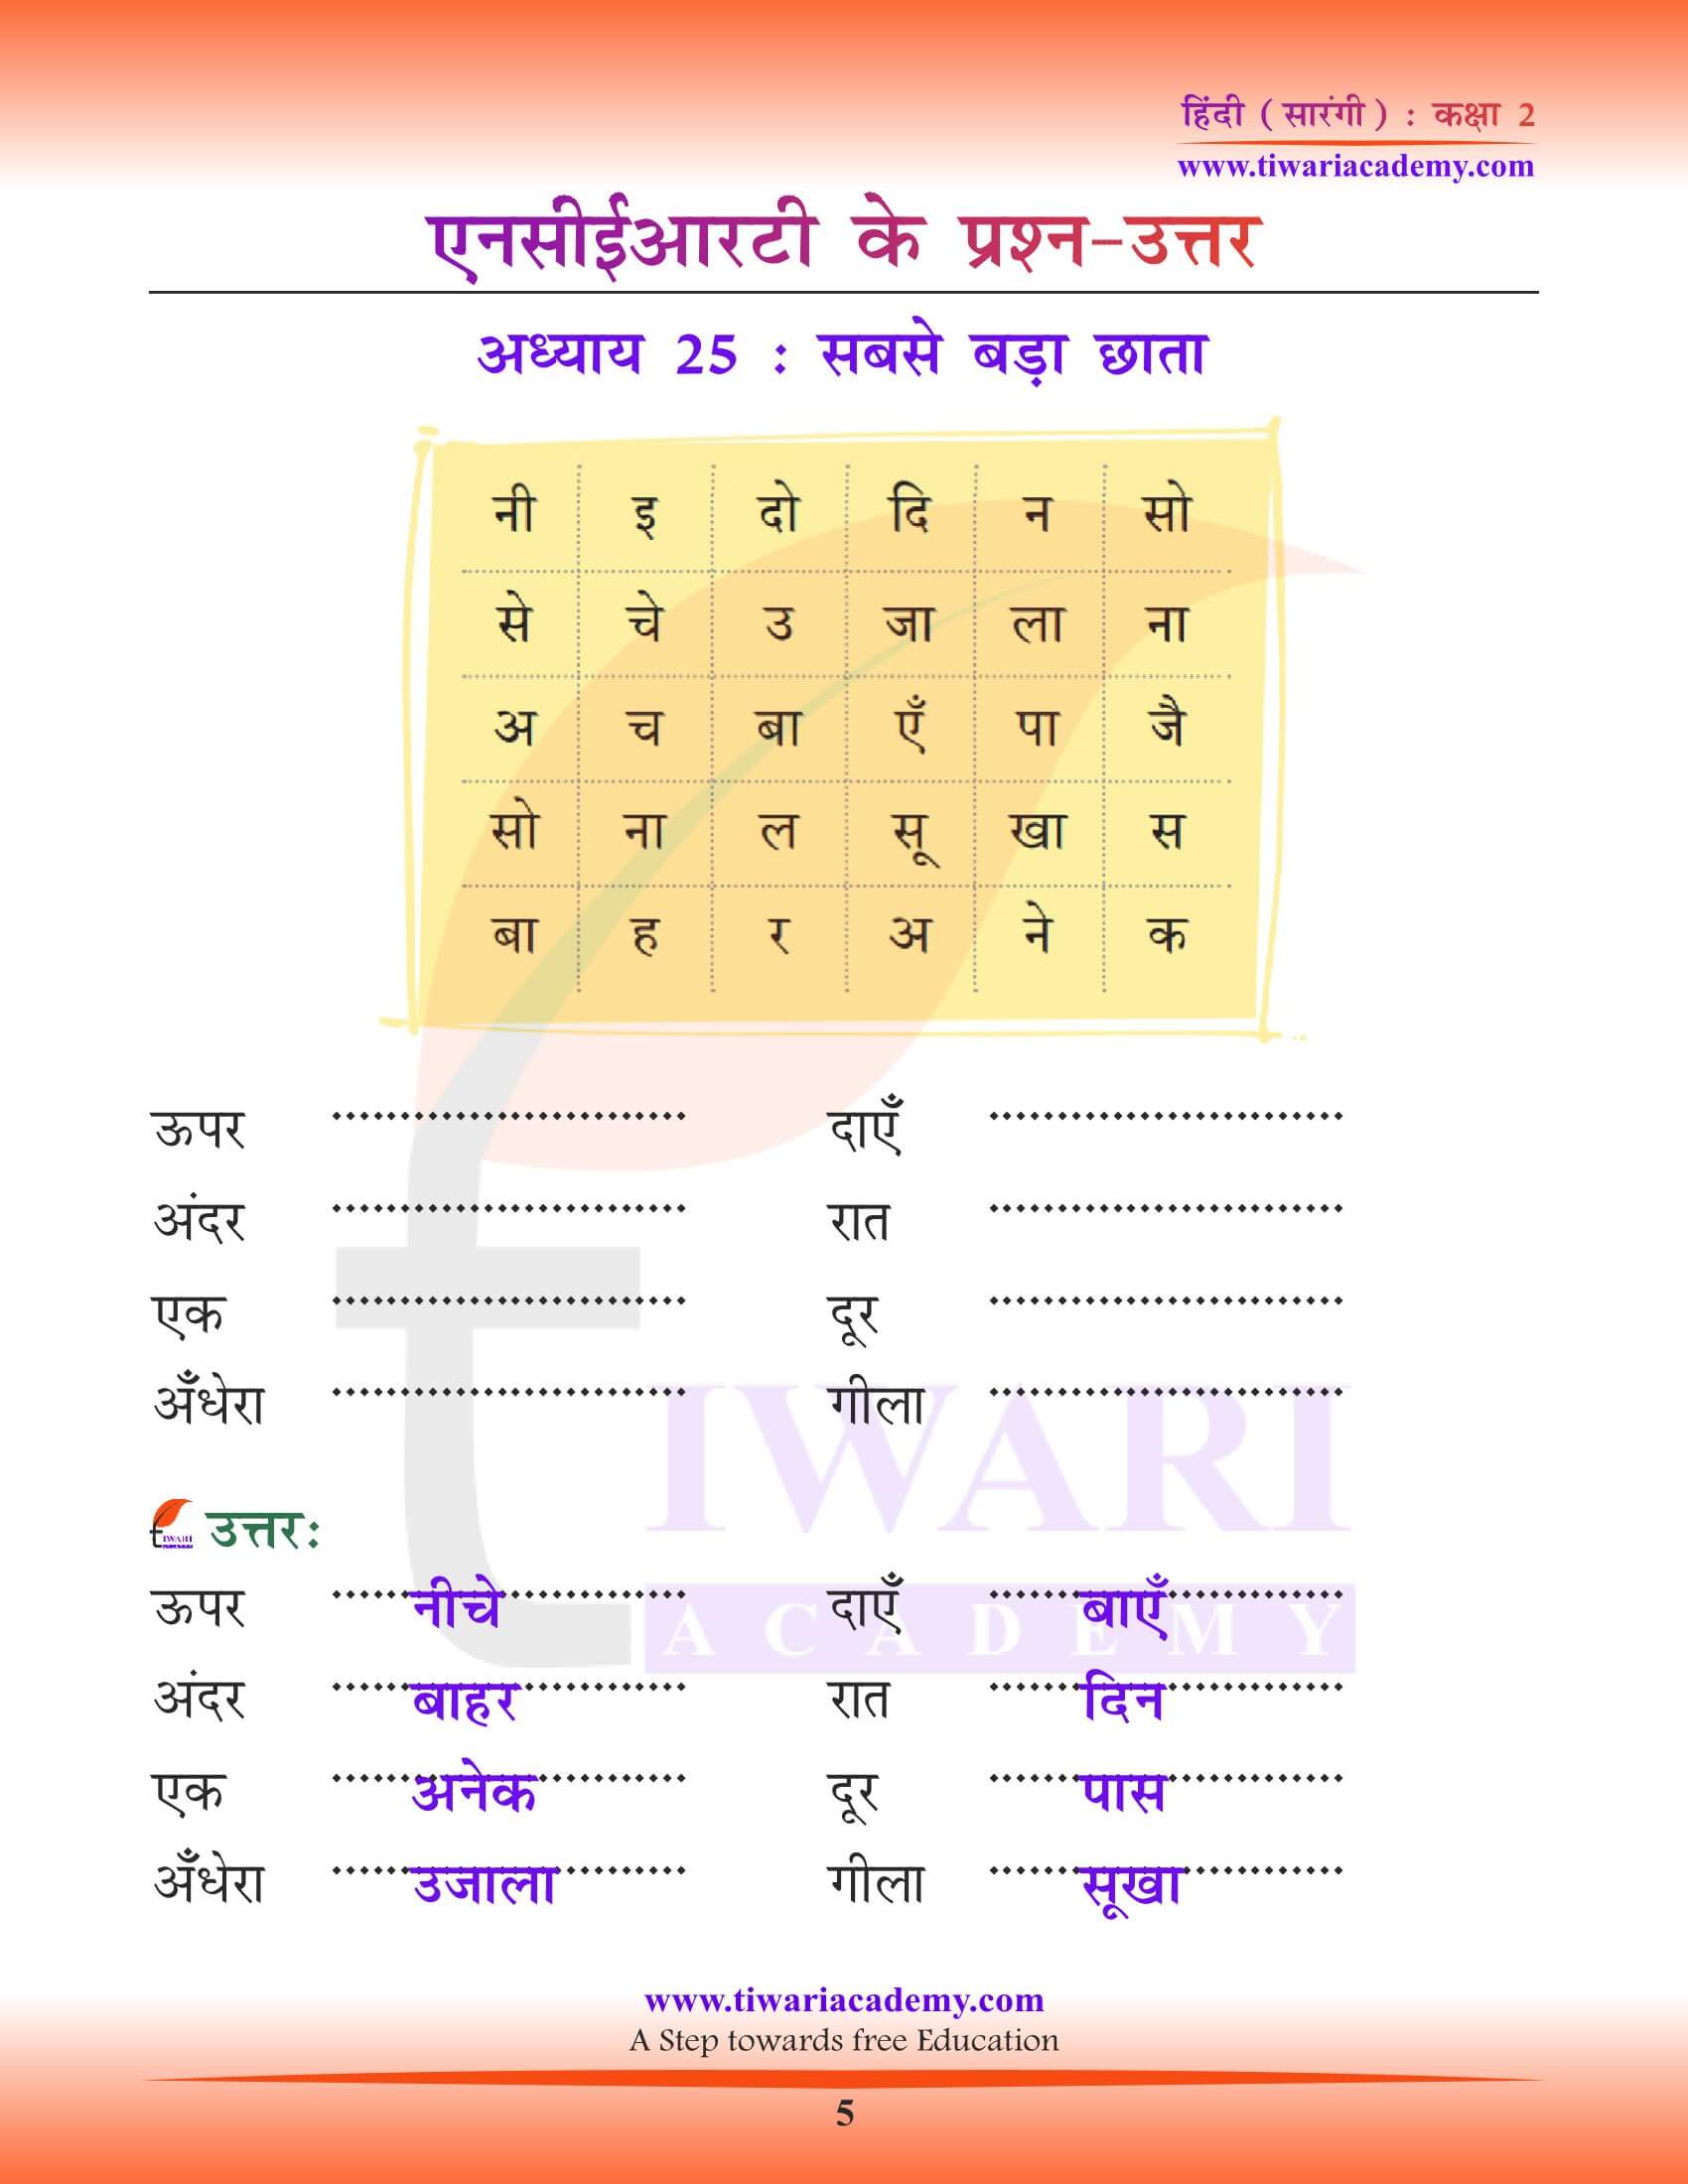 कक्षा 2 हिंदी सारंगी अध्याय 25 की गाइड